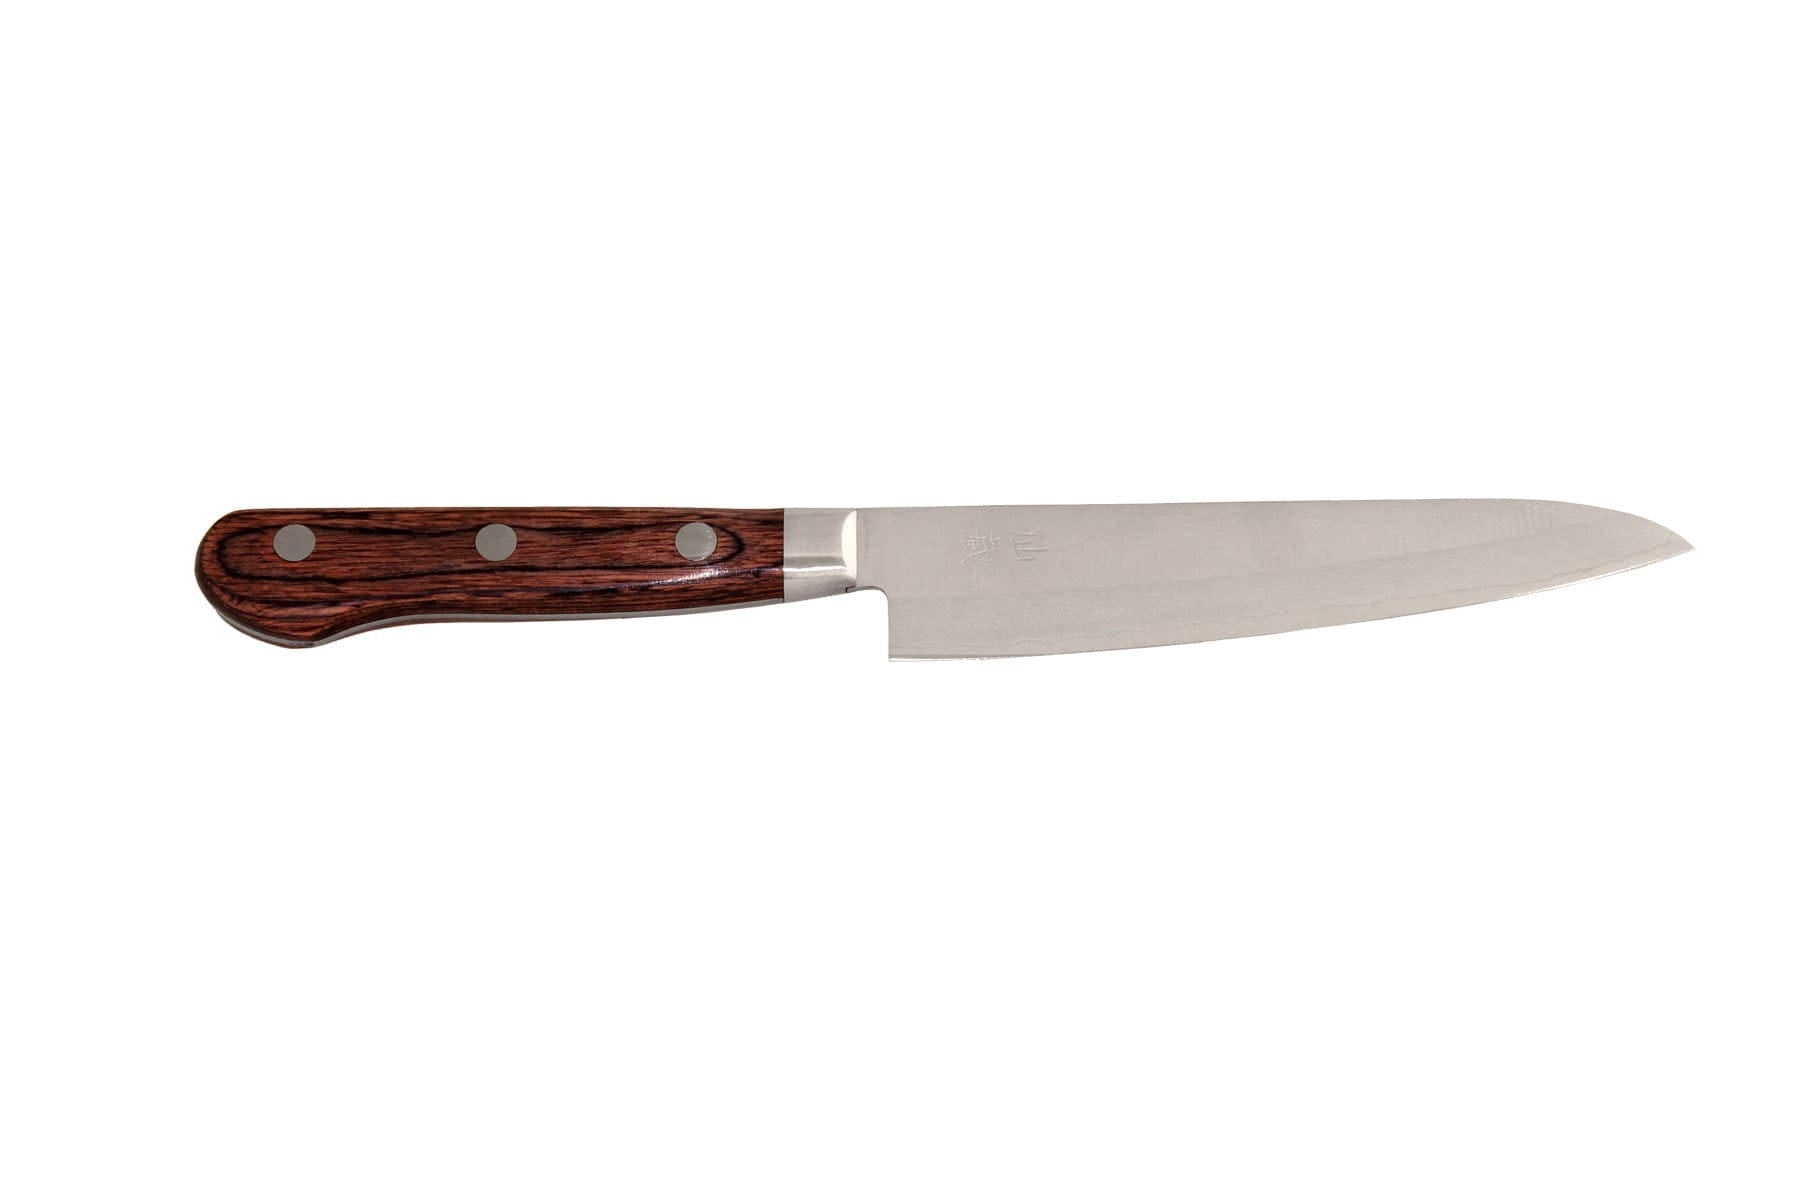 Senzo Clad AS-04 Universalkniv, 13,5 cm